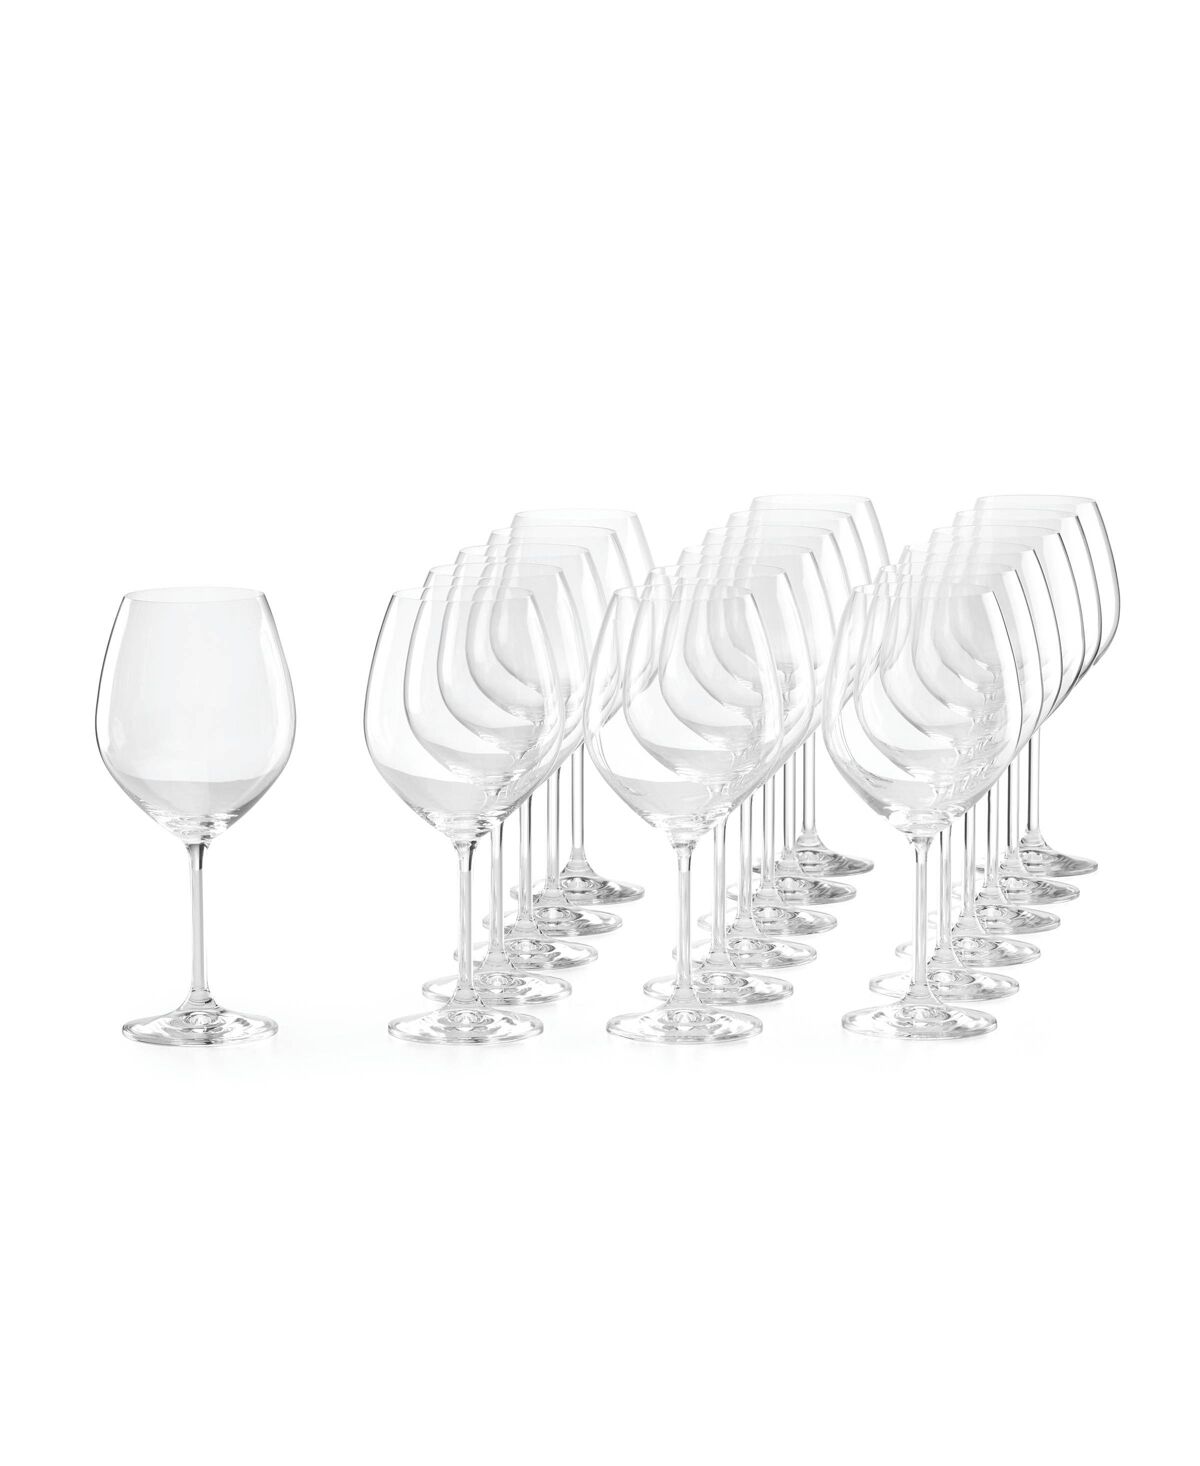 Lenox Tuscany Classics Red Wine Glasses, Set of 18 - Clear